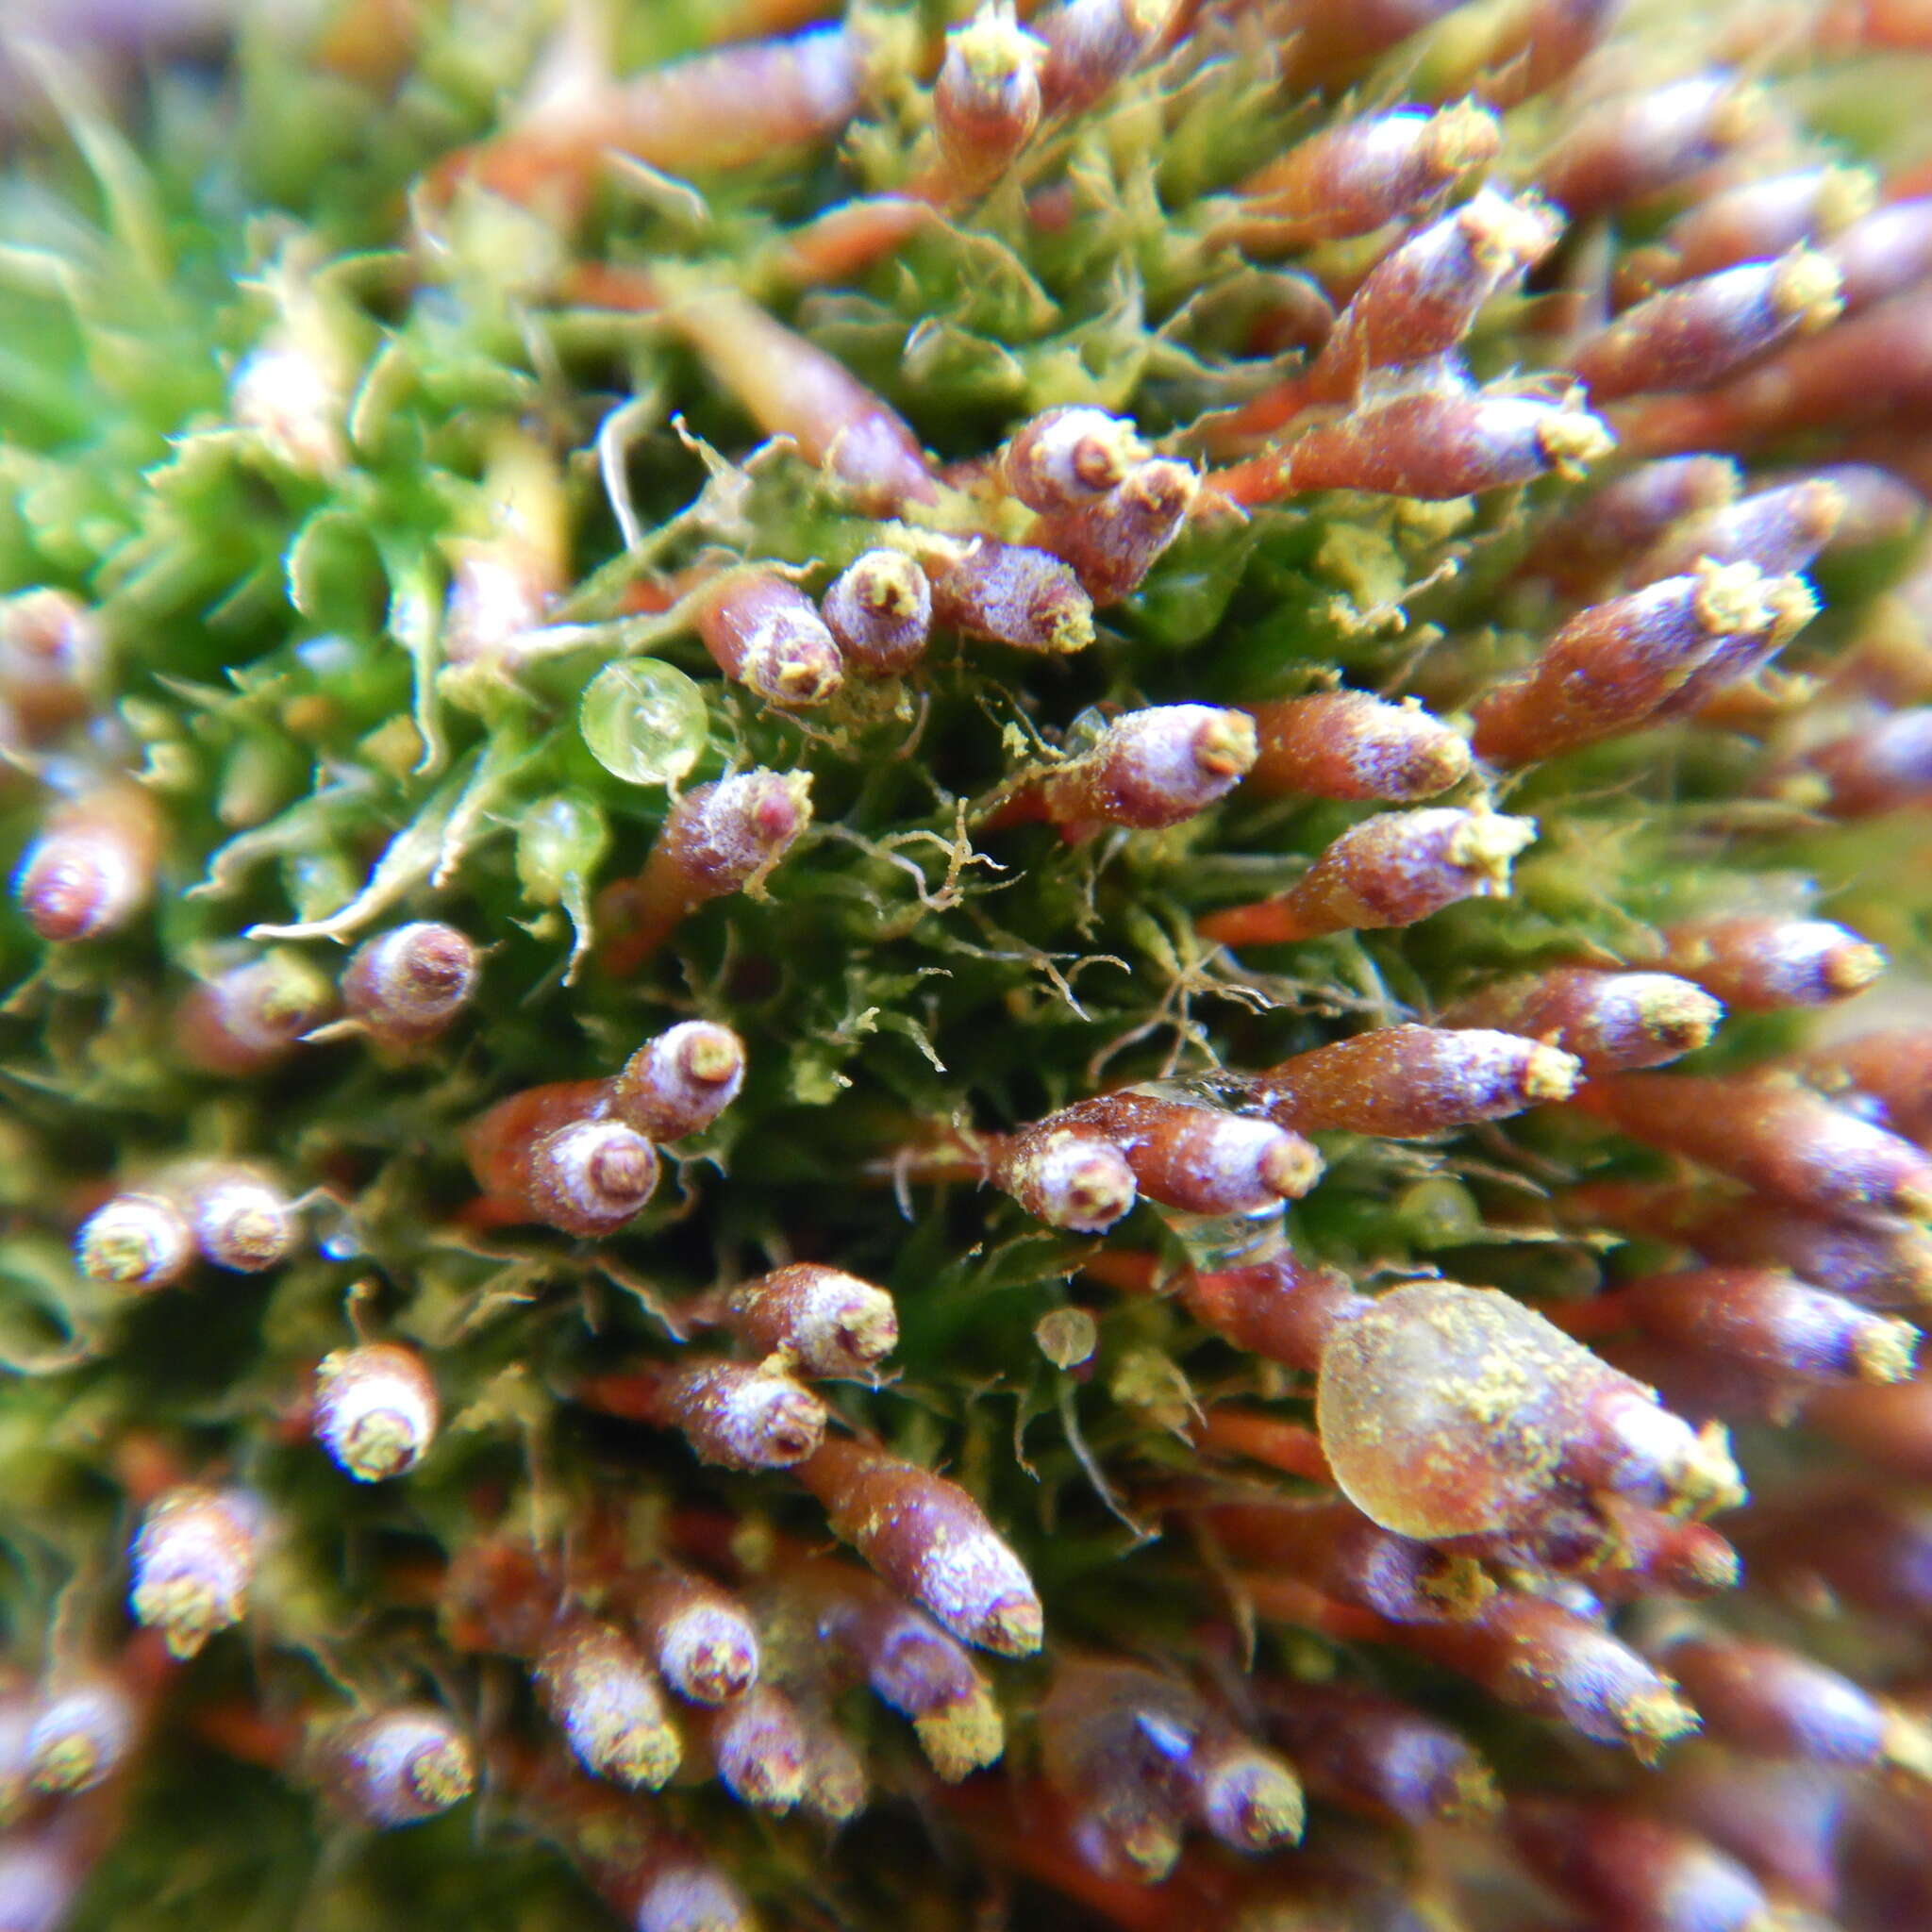 Image of toothedleaf nitrogen moss